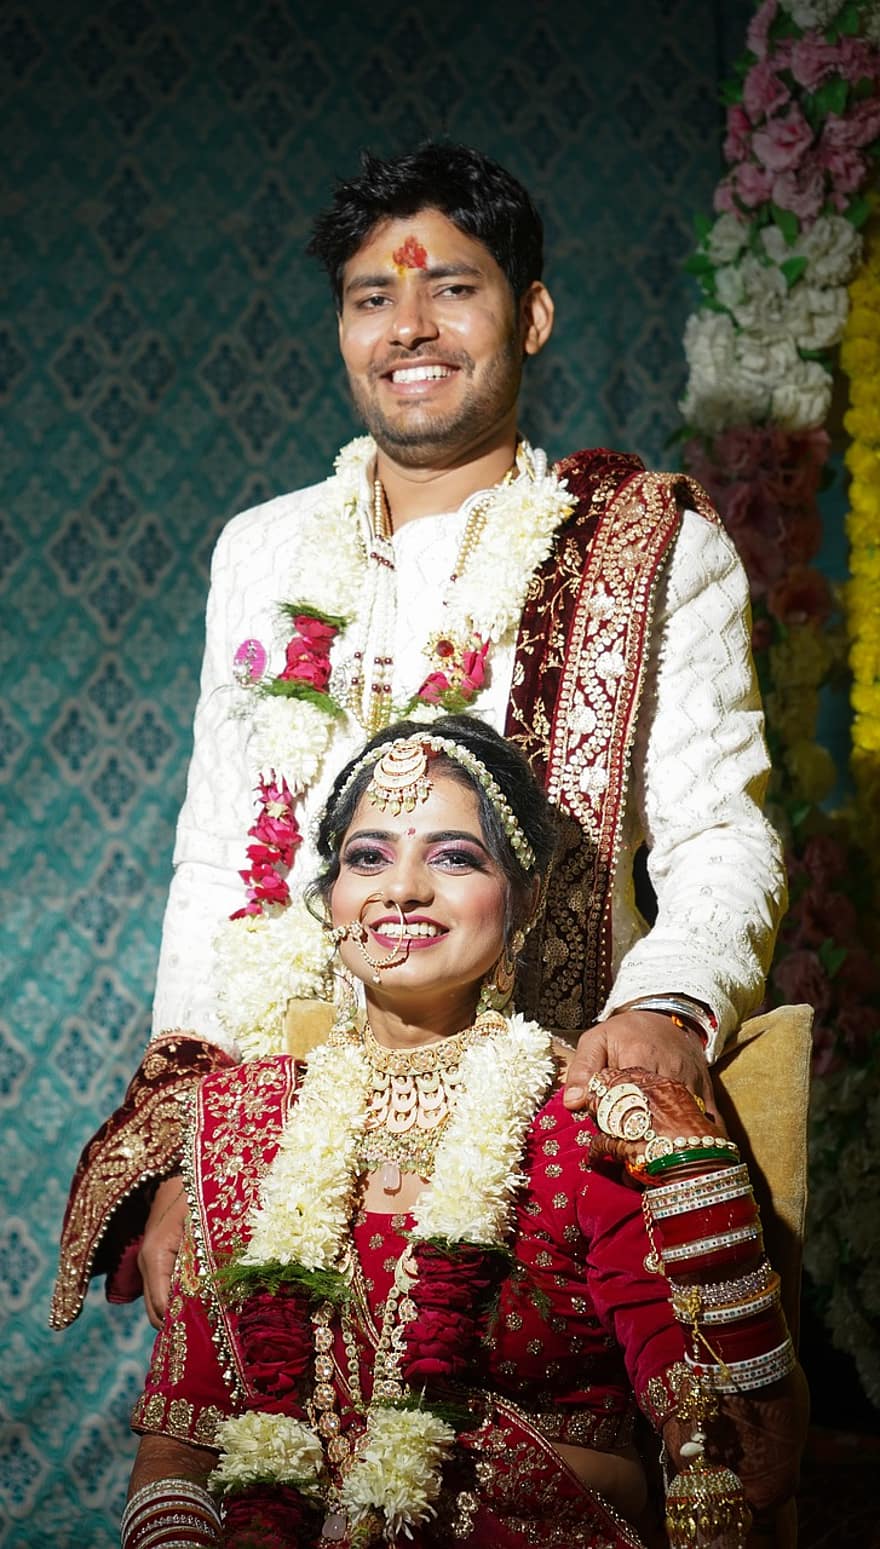 panna młoda, Pan młody, dzień ślubu, sesja ślubna, ślub indyjski, indyjska panna młoda, Indyjski pan młody, panna młoda panna młoda, przedślubne, portrety ślubne, Piękna indyjska dziewczyna